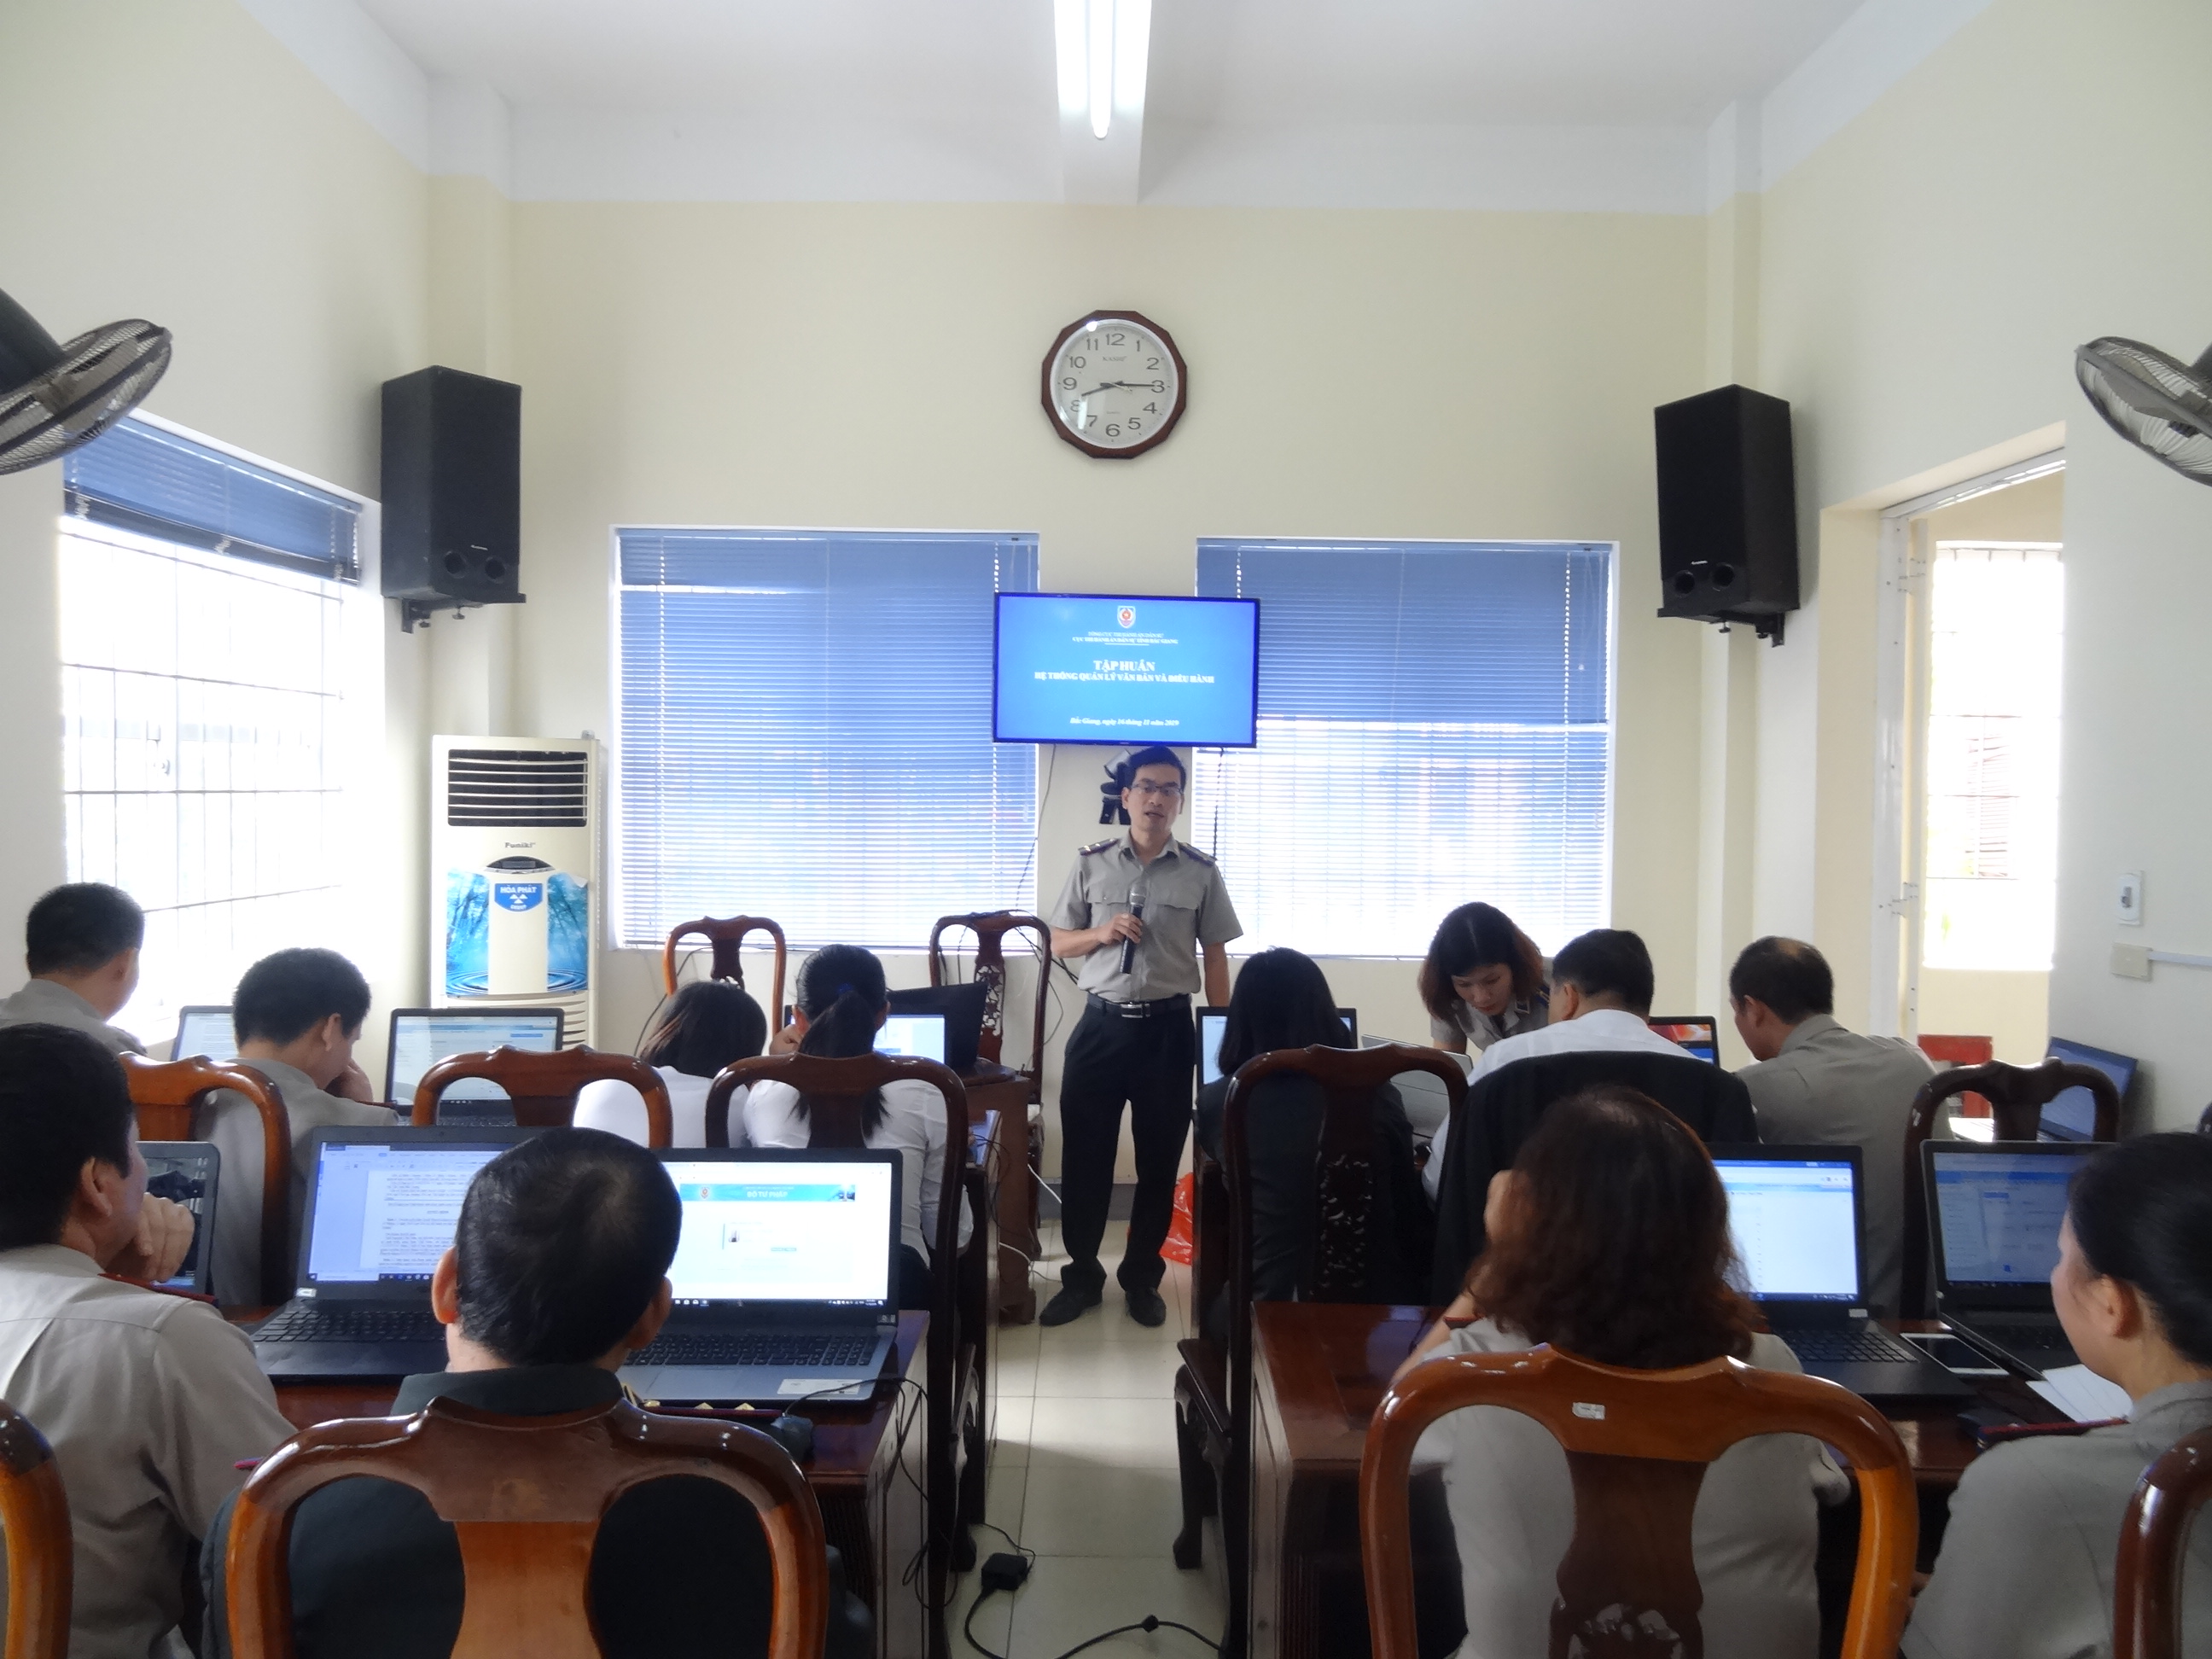 Bắc Giang tổ chức tập huấn sử dụng phần mềm Hỗ trợ trực tuyến THADS và phần mềm Hệ thống quản lý văn bản điều hành